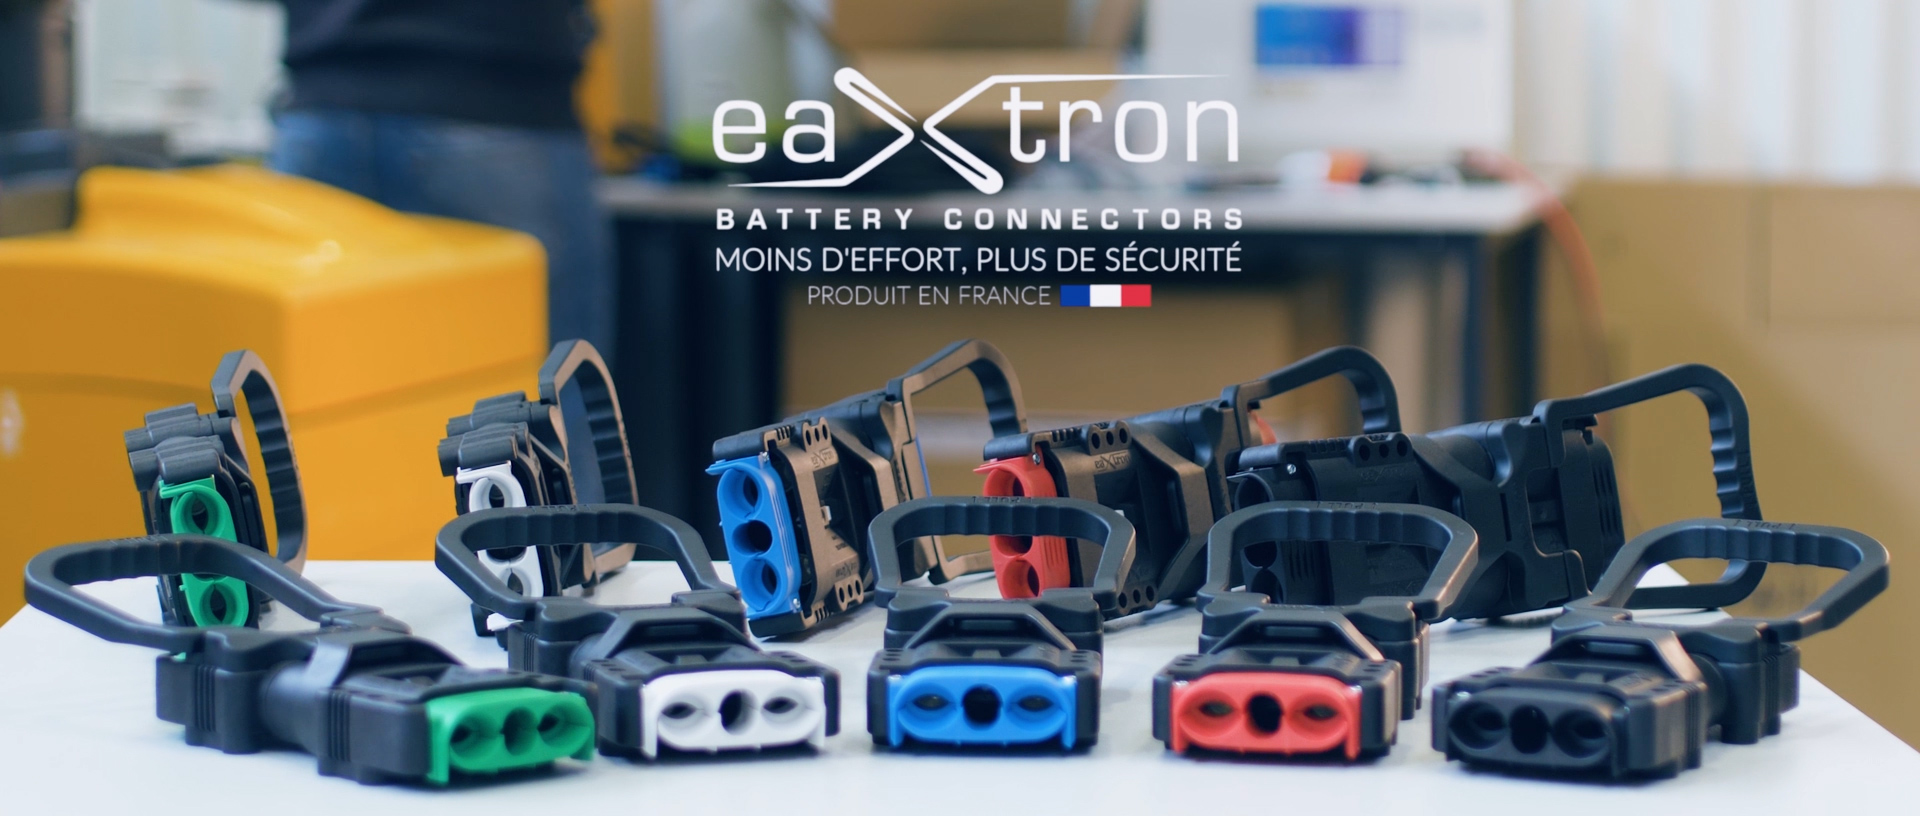 Eaxtron 8 connecteurs batteries